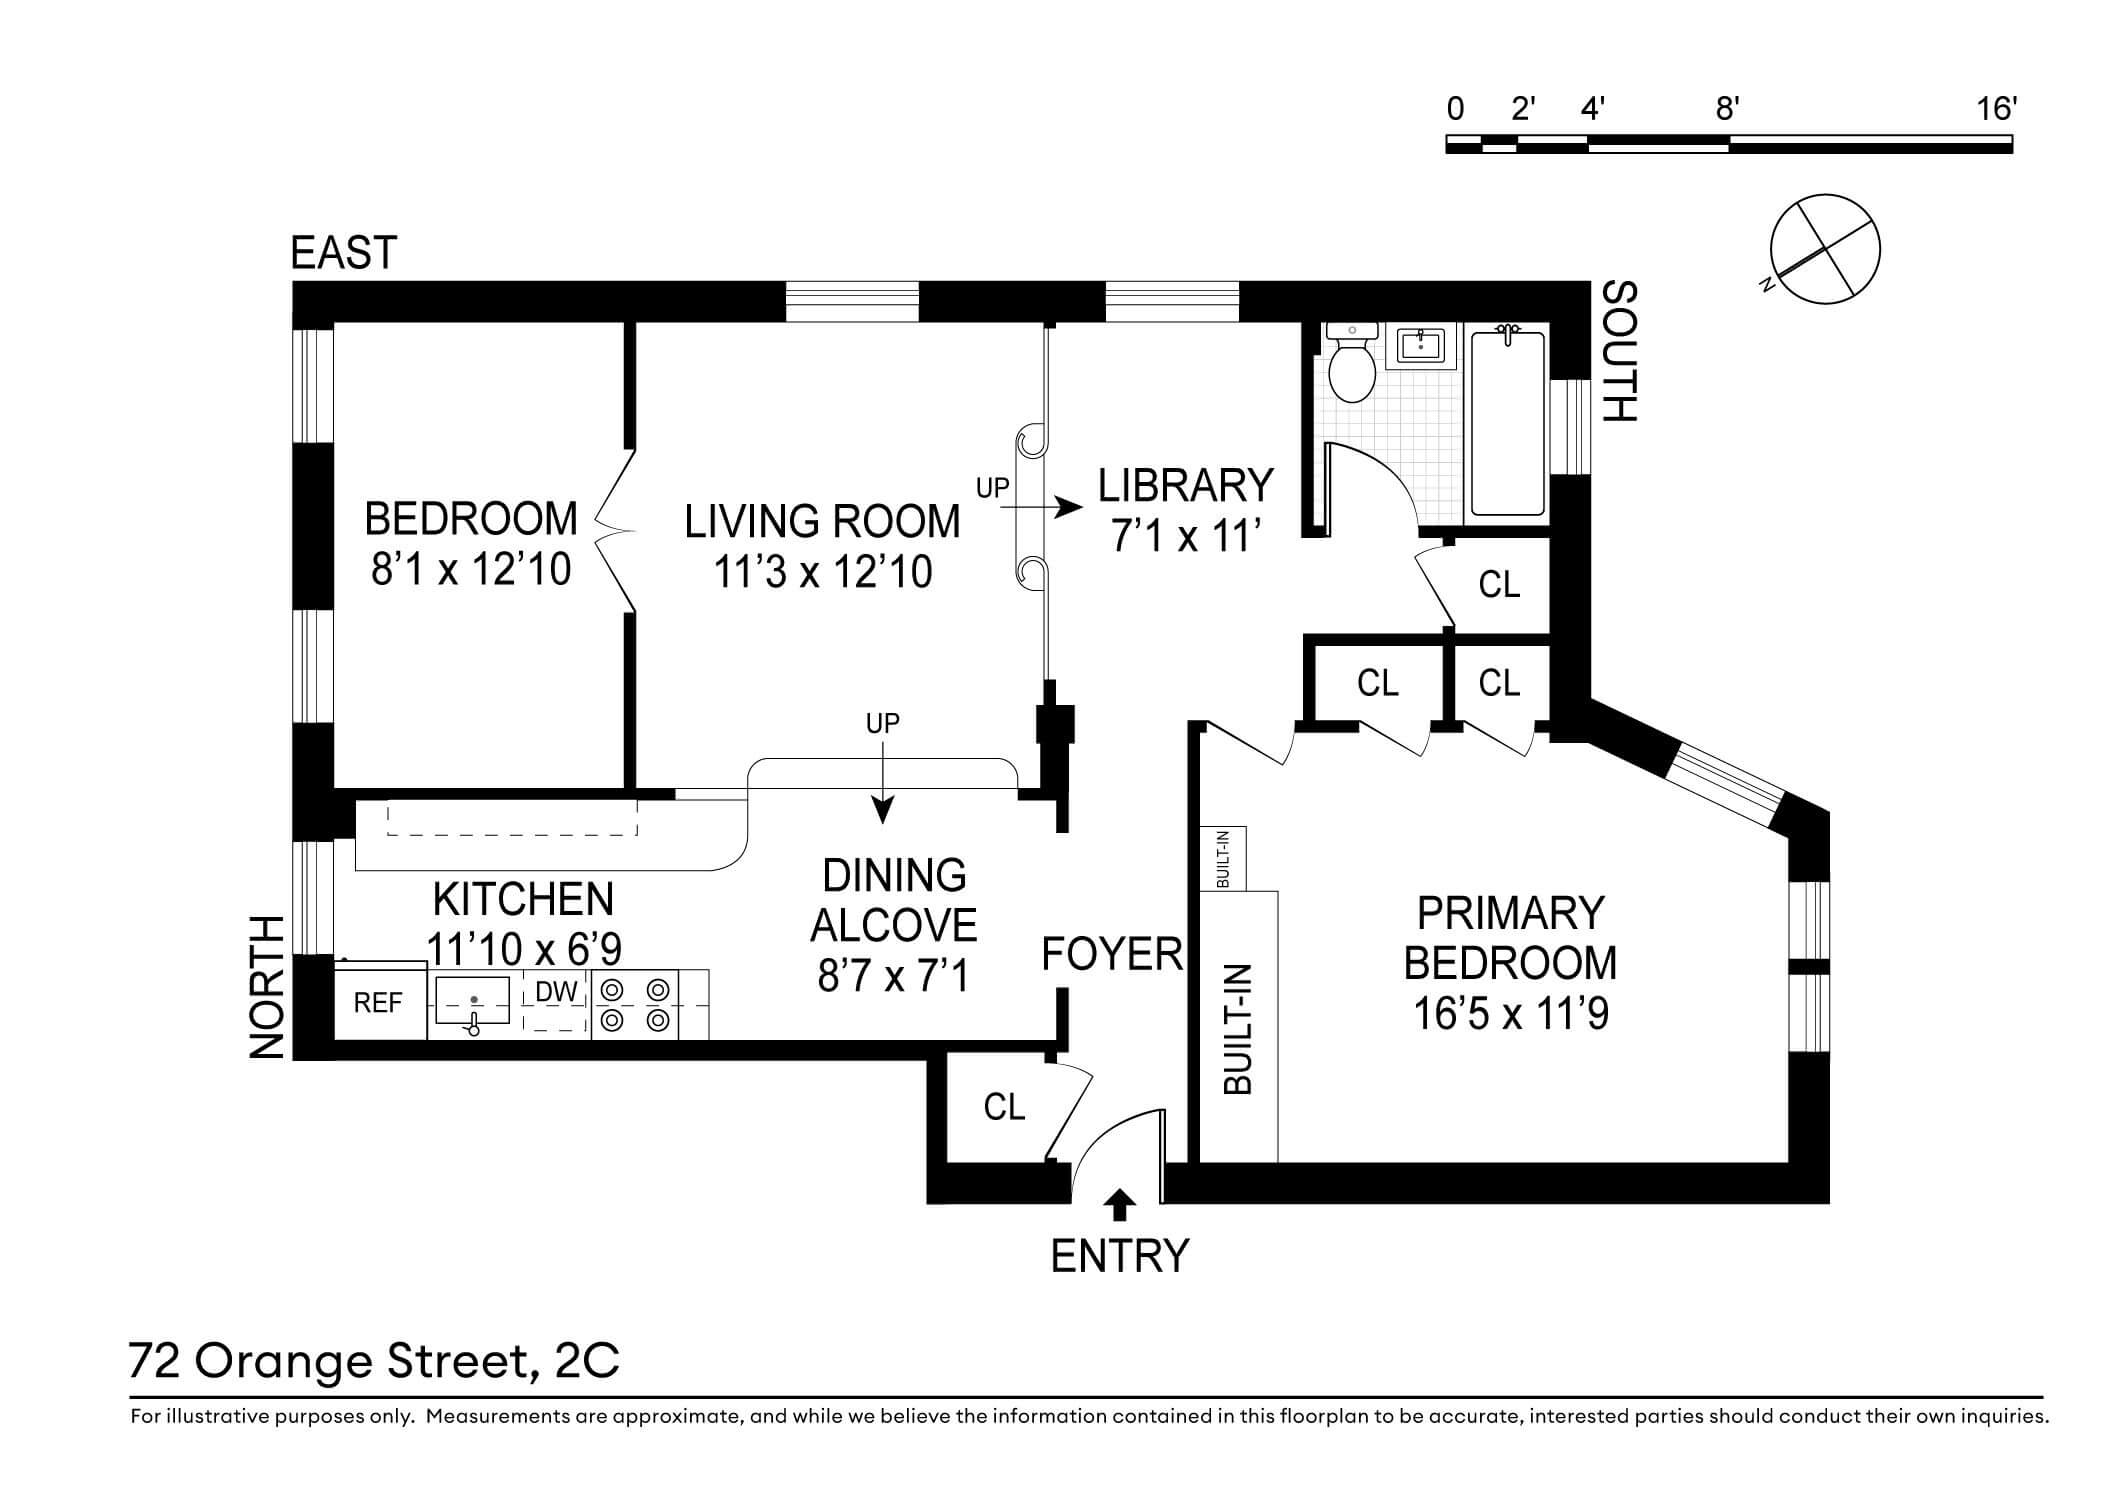 floorplan of apartment 2c at 72 orange street in brooklyn heights